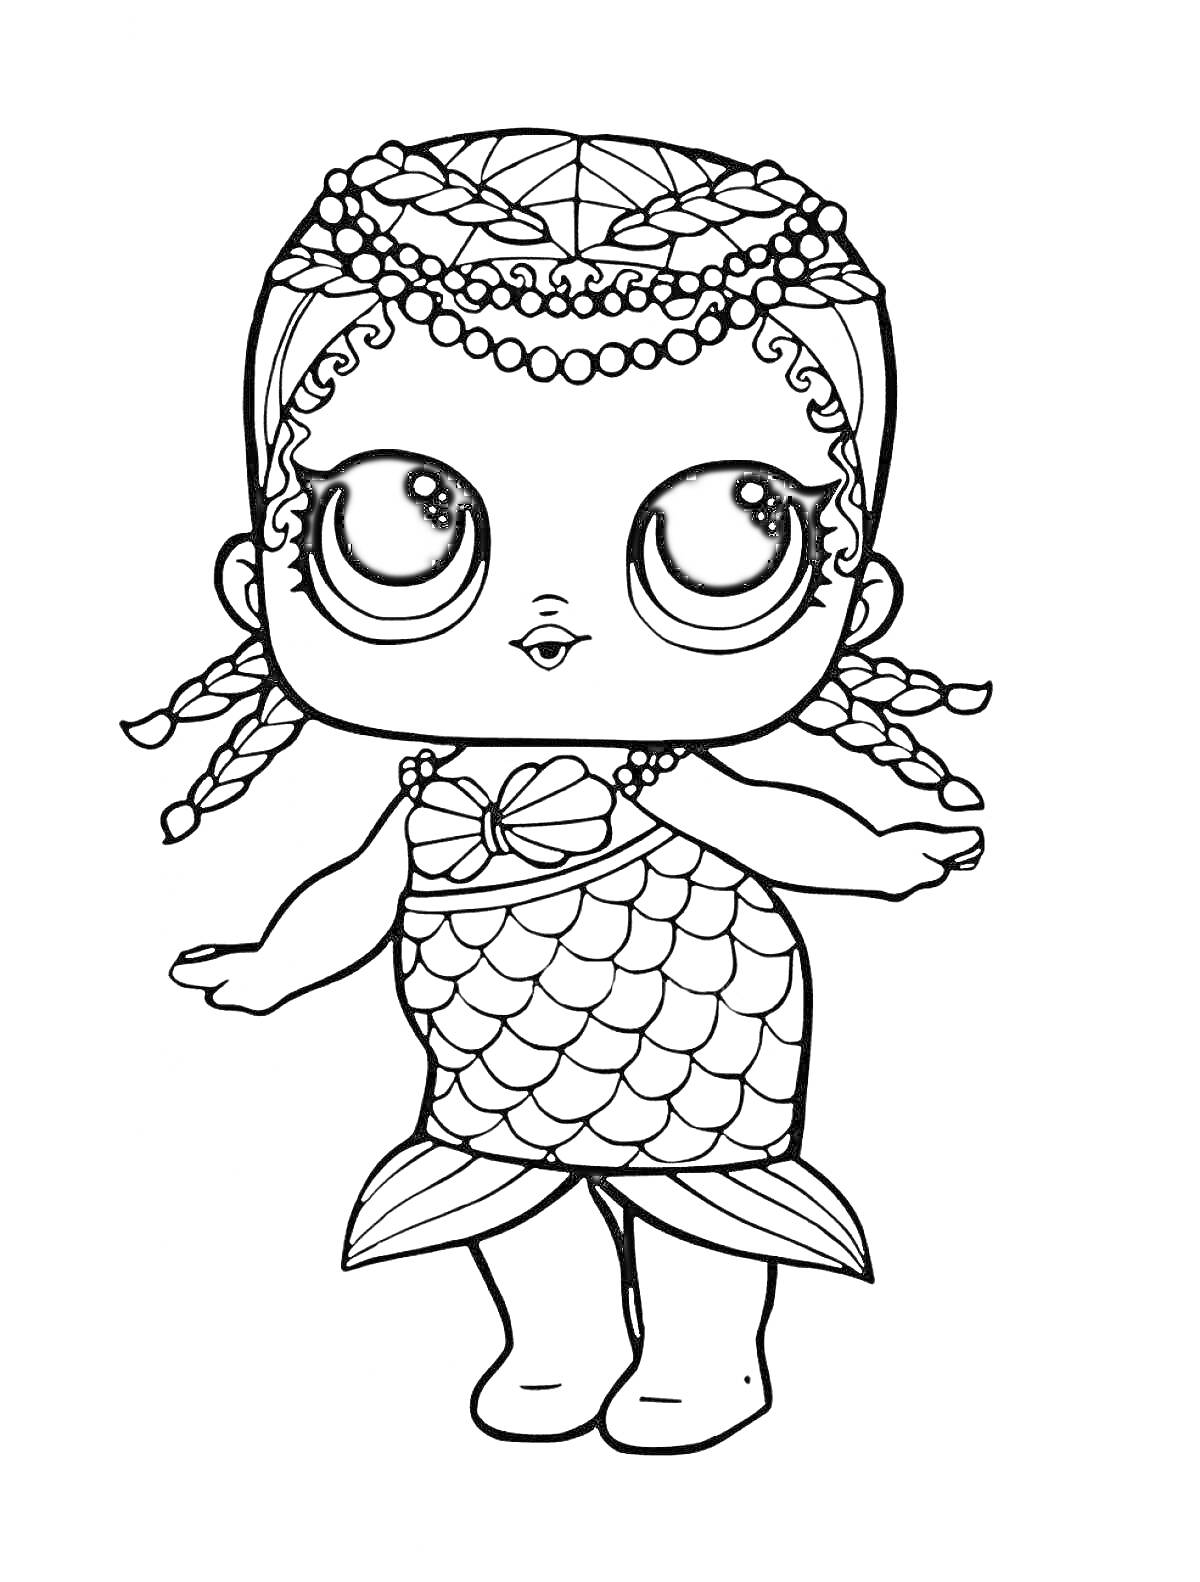 Раскраска Кукла в образе русалки с большими глазами, ожерельем из ракушек и рыбьим хвостом.